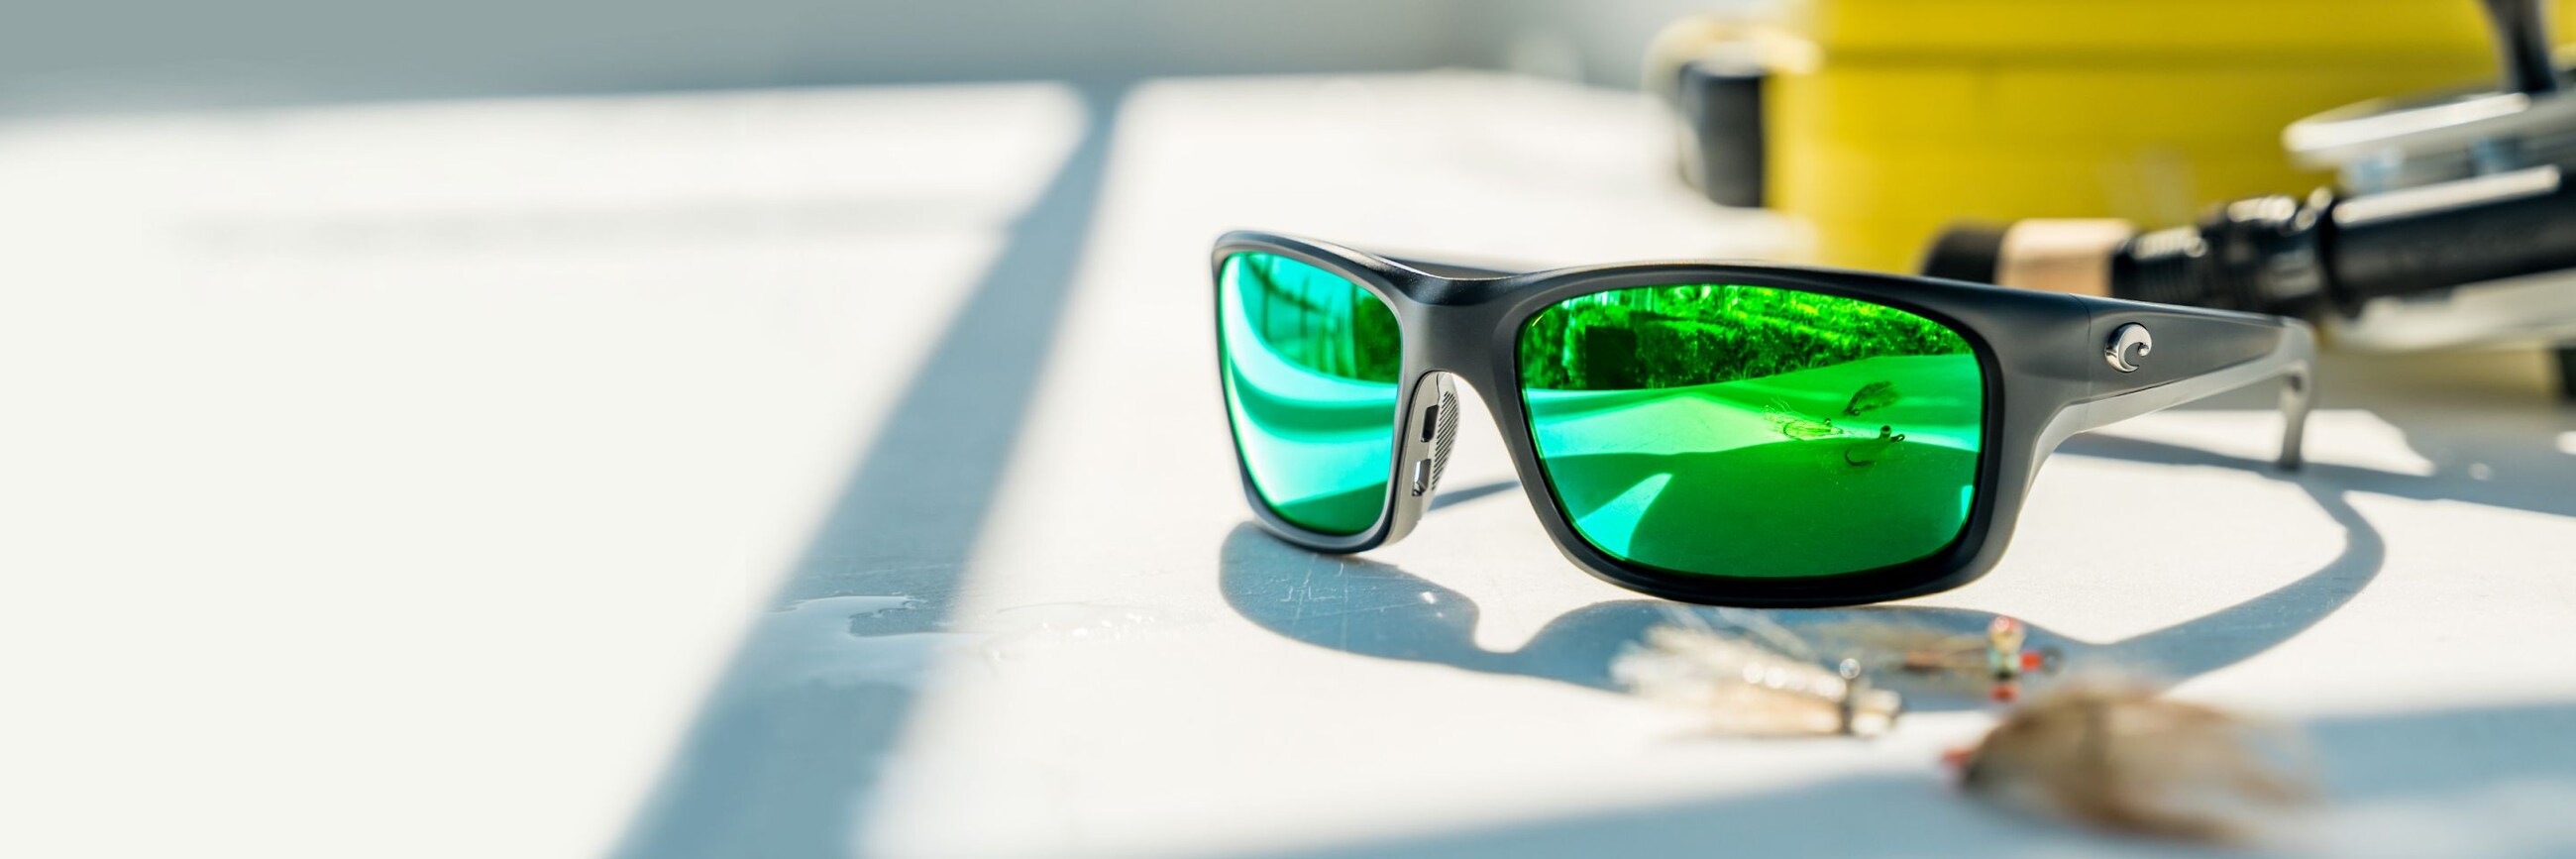 CELEBRAMOS NUESTRO 40.º ANIVERSARIO-En 1983, un grupo pescadores se dió cuenta de que sus gafas de sol no estaban a la altura de lo que enfrentaban,por lo que crearon las suyas propias. Hoy, 40 años después, Costa sigue dedicada a crear gafas de sol de primer nivel para los amantes del agua, además de proteger al planeta acuático que llamamos hogar.